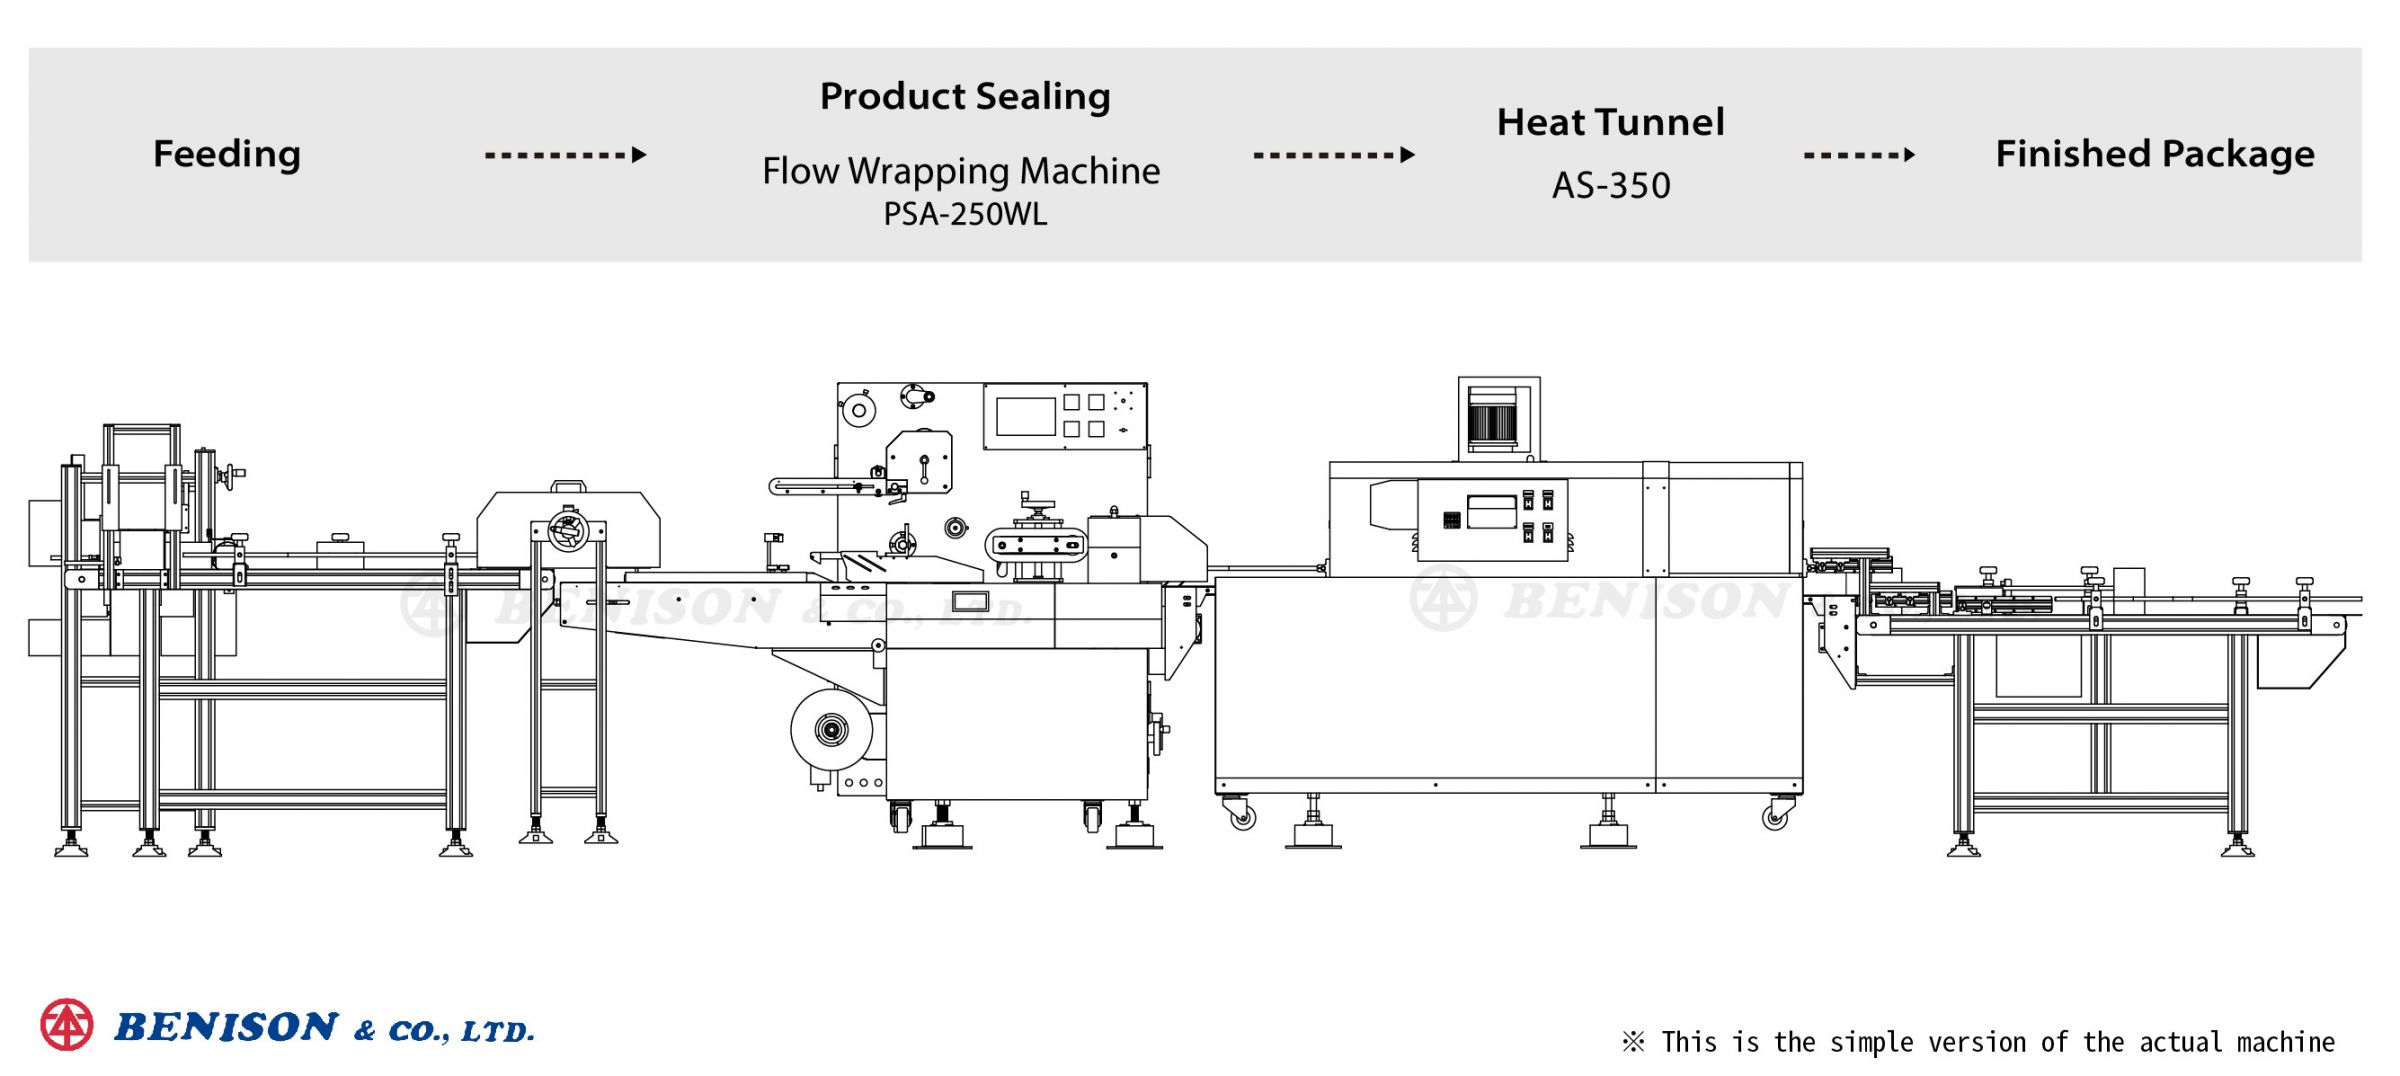 中药罐包装解决方案：枕式包装机(收缩型), PSA-250WL + 热收缩炉, AS-350